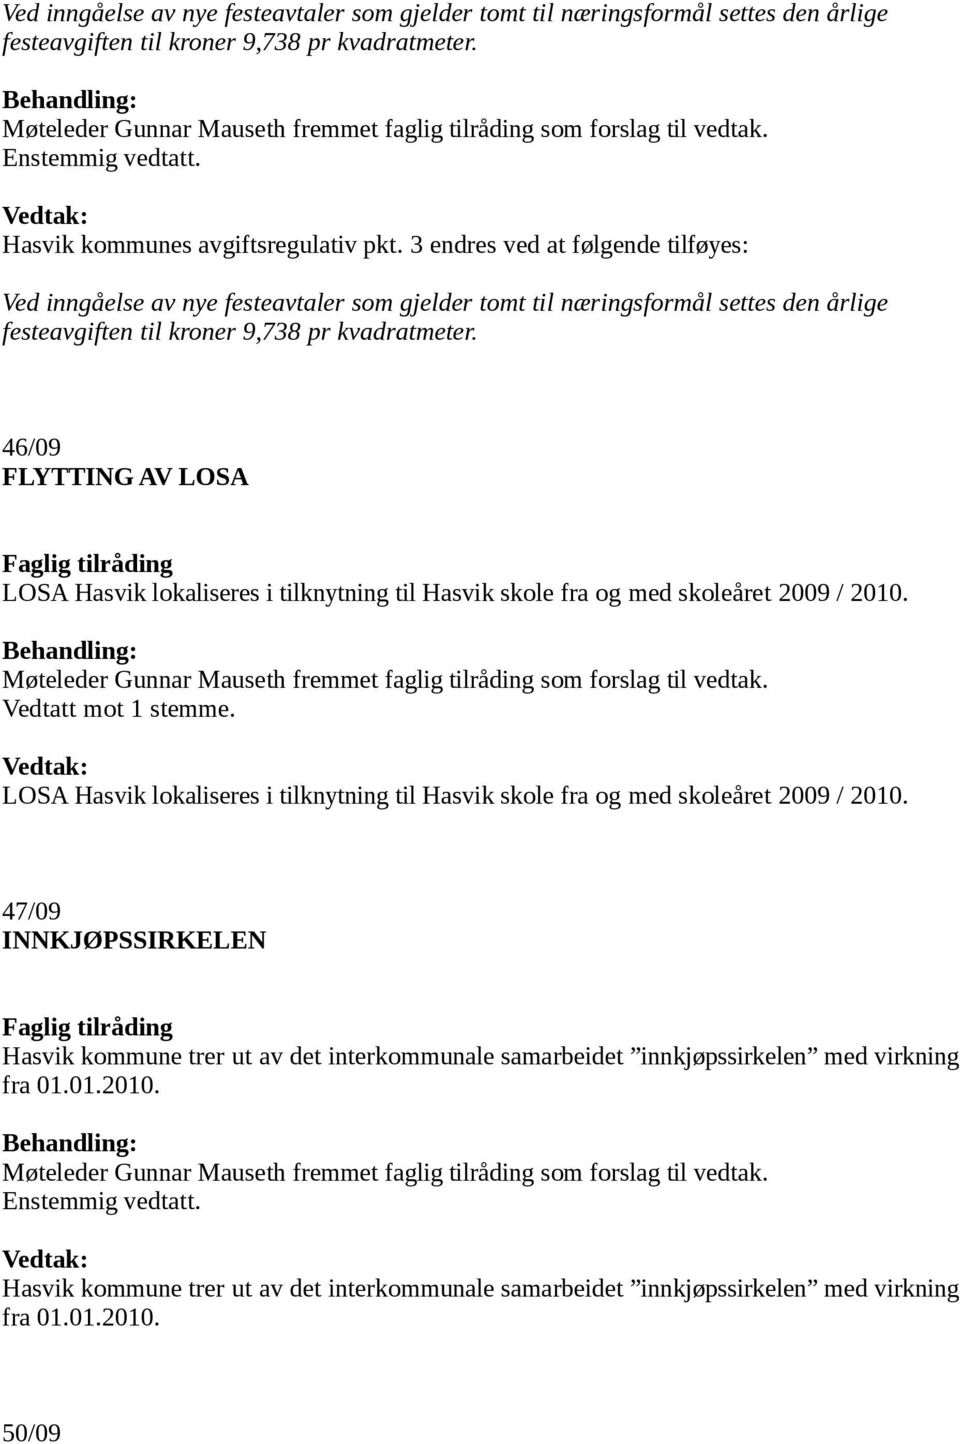 46/09 FLYTTING AV LOSA LOSA Hasvik lokaliseres i tilknytning til Hasvik skole fra og med skoleåret 2009 / 2010. Vedtatt mot 1 stemme.